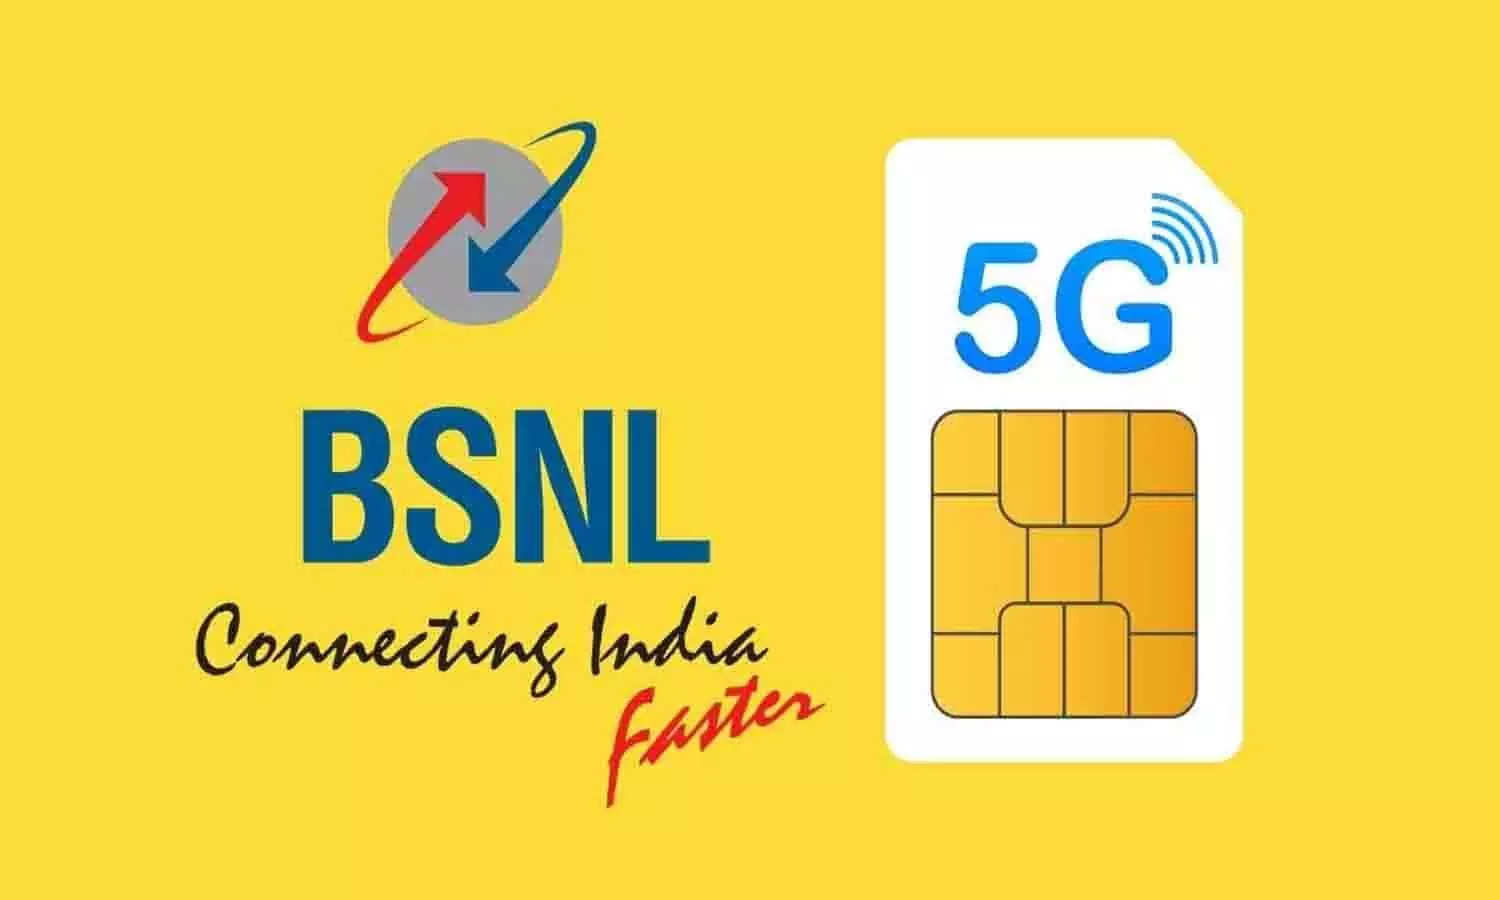 Bsnl Recharge Plans: BSNL रिचार्ज प्लान की फुल लिस्ट कंपनी ने की जारी, फ्री अनलिमटेड कालिंग और इंटरनेट सहित मिलेंगे कई फायदे....जाने पूरी Details